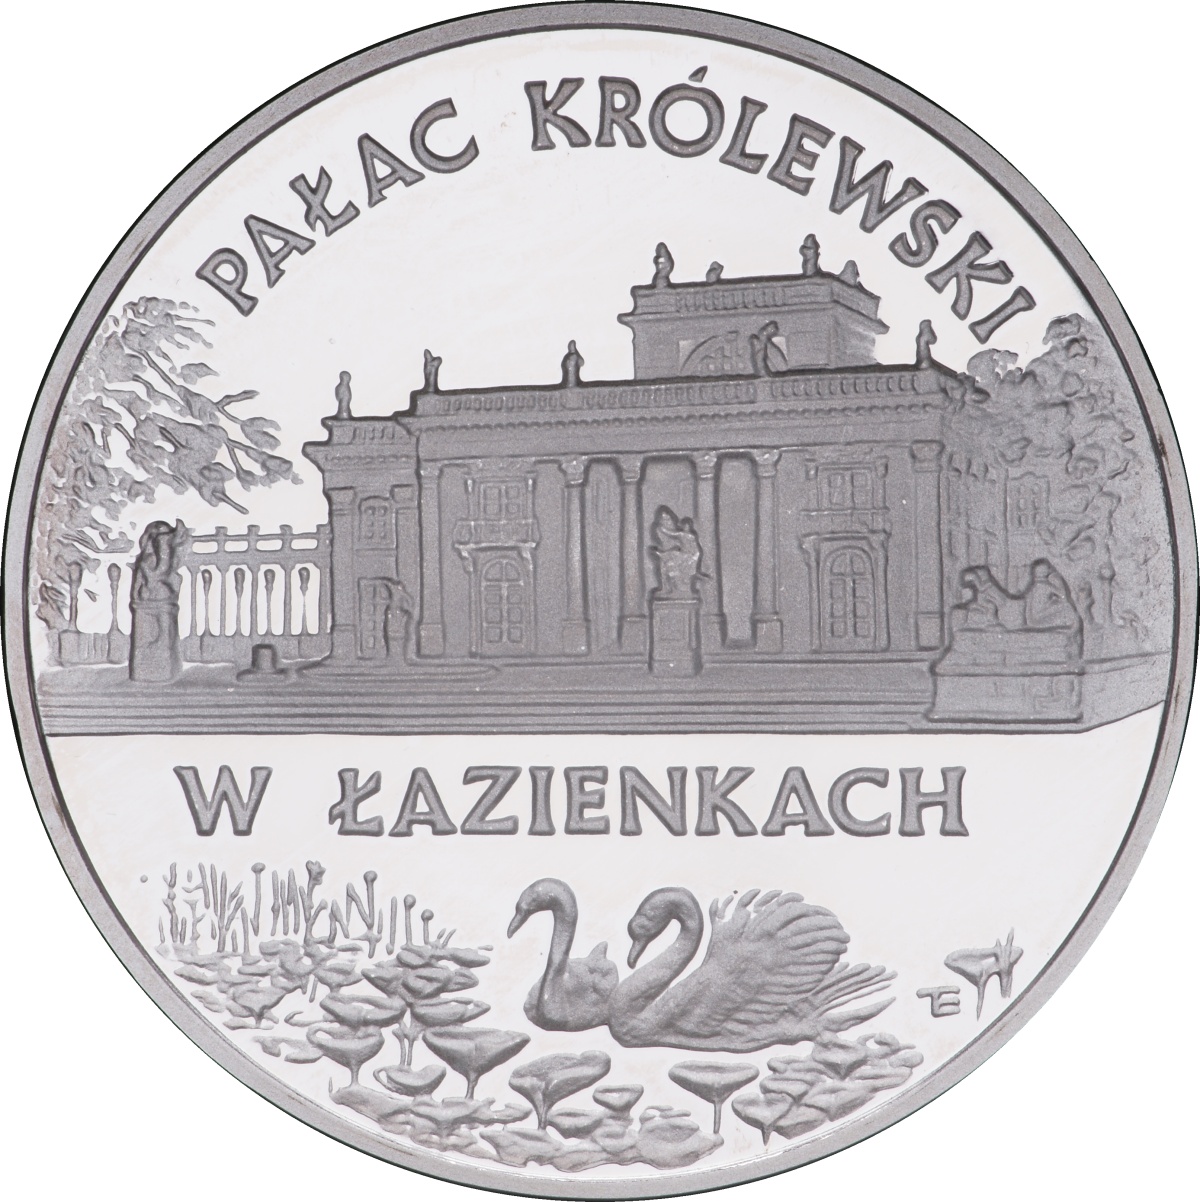 20zl-palac-krolewski-w-lazienkach-rewers-monety